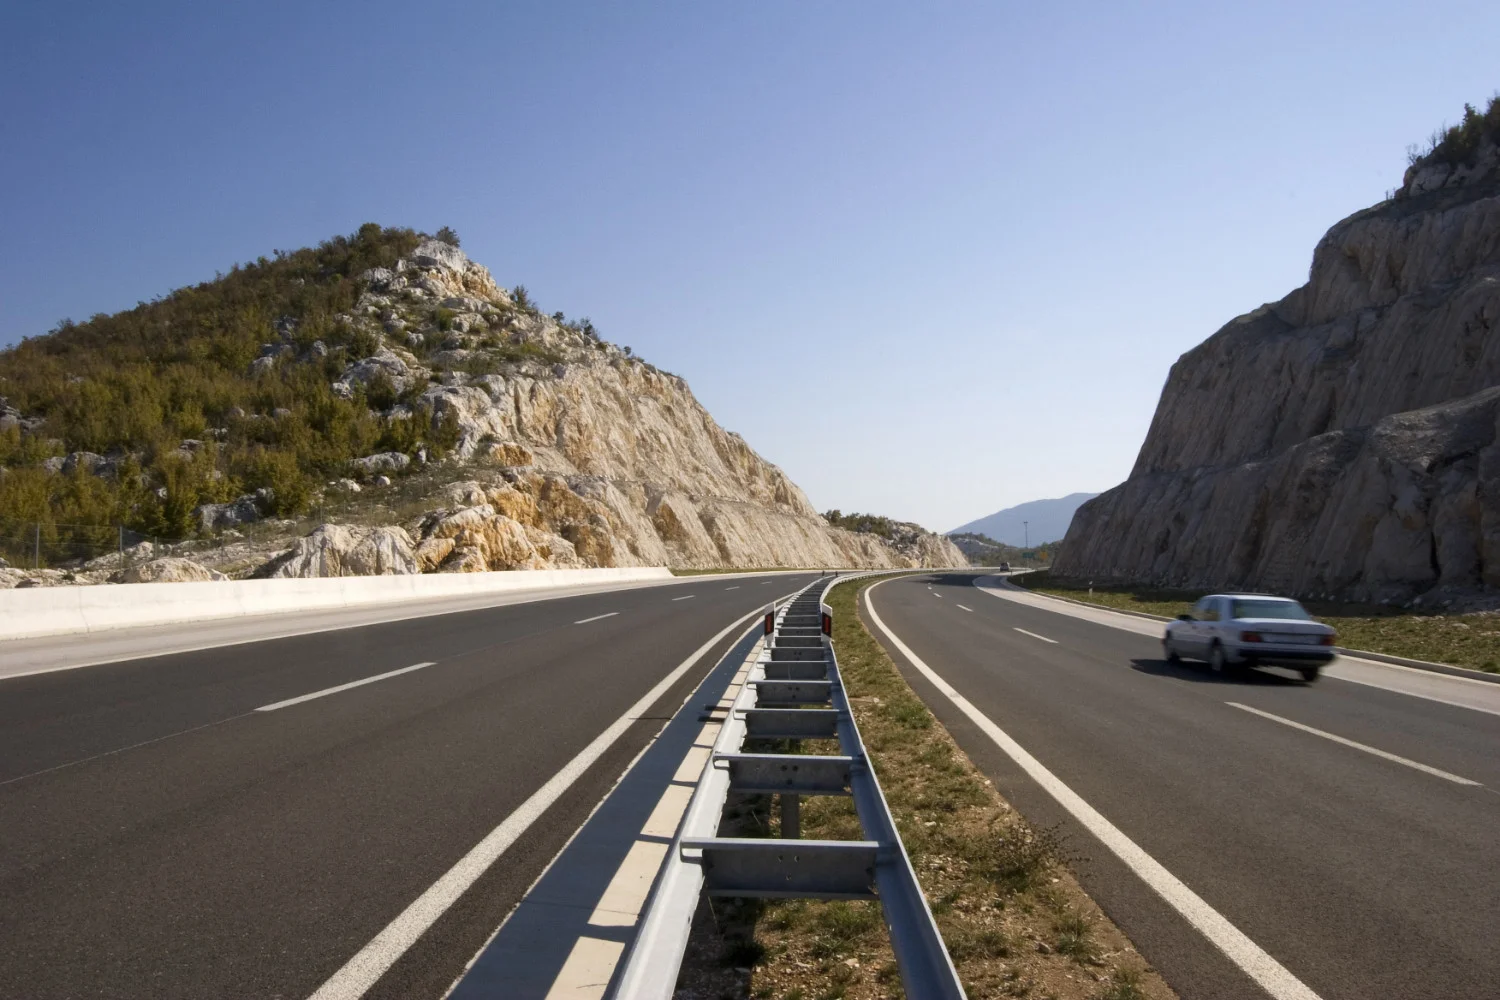 Chorvátske diaľnice sú známe svojimi vysokými rýchlostnými limitmi. Diaľničný limit v Chorvátsku je 130 km/h.